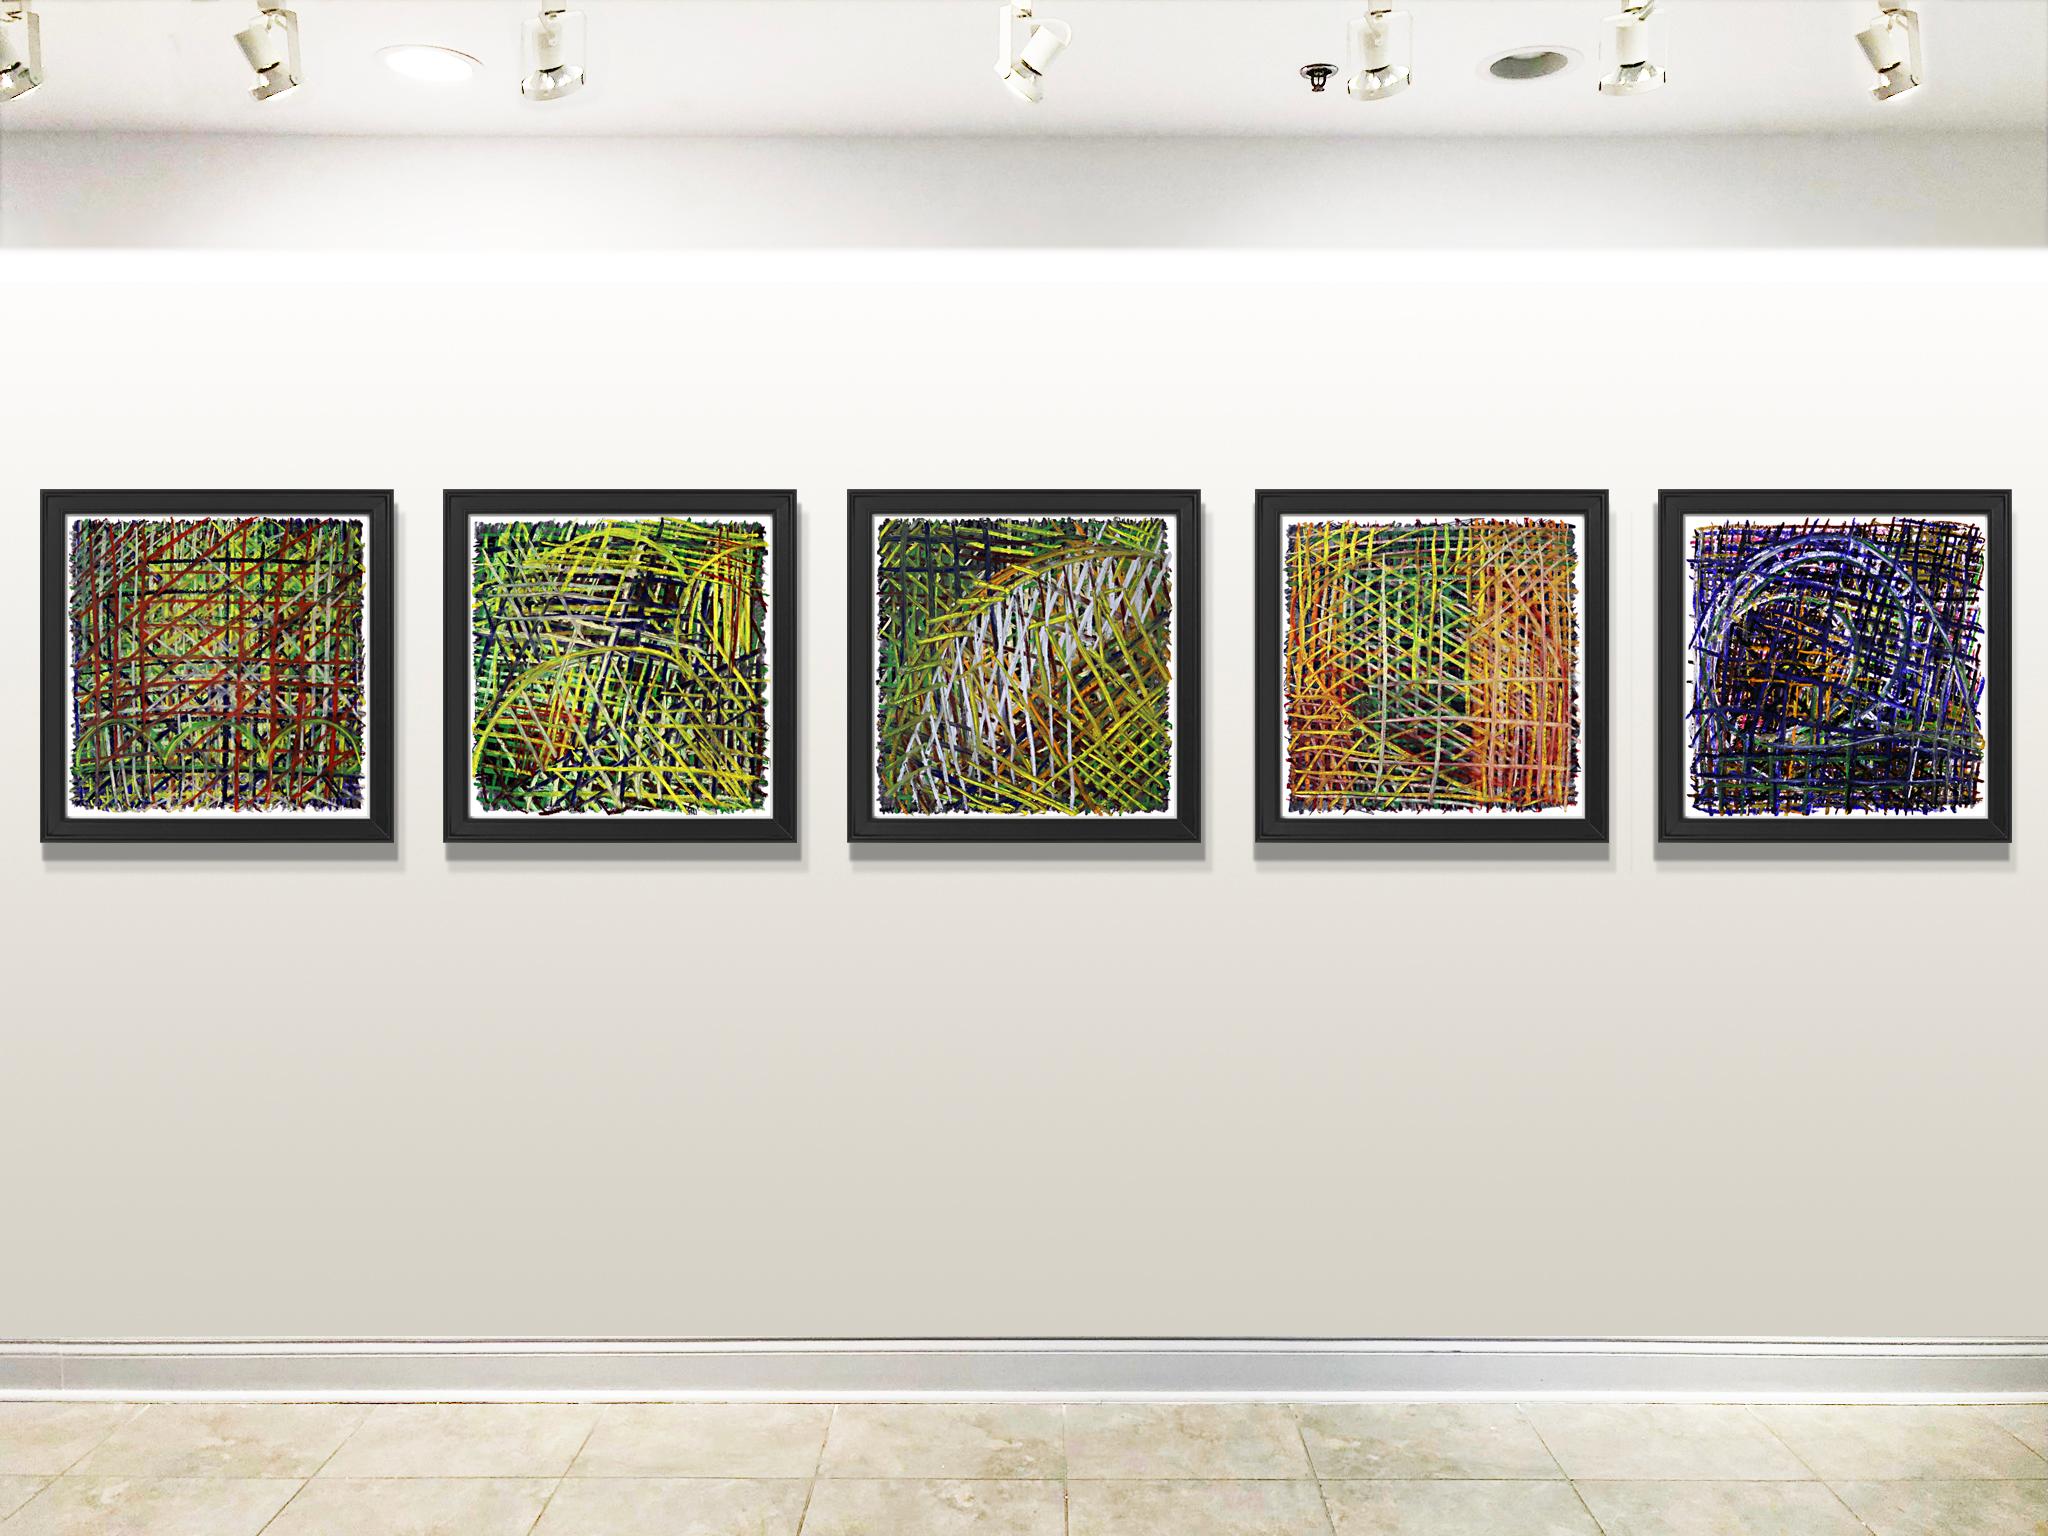 Tony Khawam ist ein etablierter zeitgenössischer Künstler, der für seine figurativen, abstrakten Arbeiten und eine Technik bekannt ist, die auf der Anhäufung einzelner Striche oder Linien in einem chaotischen, aber kontrollierten Ansatz basiert. .